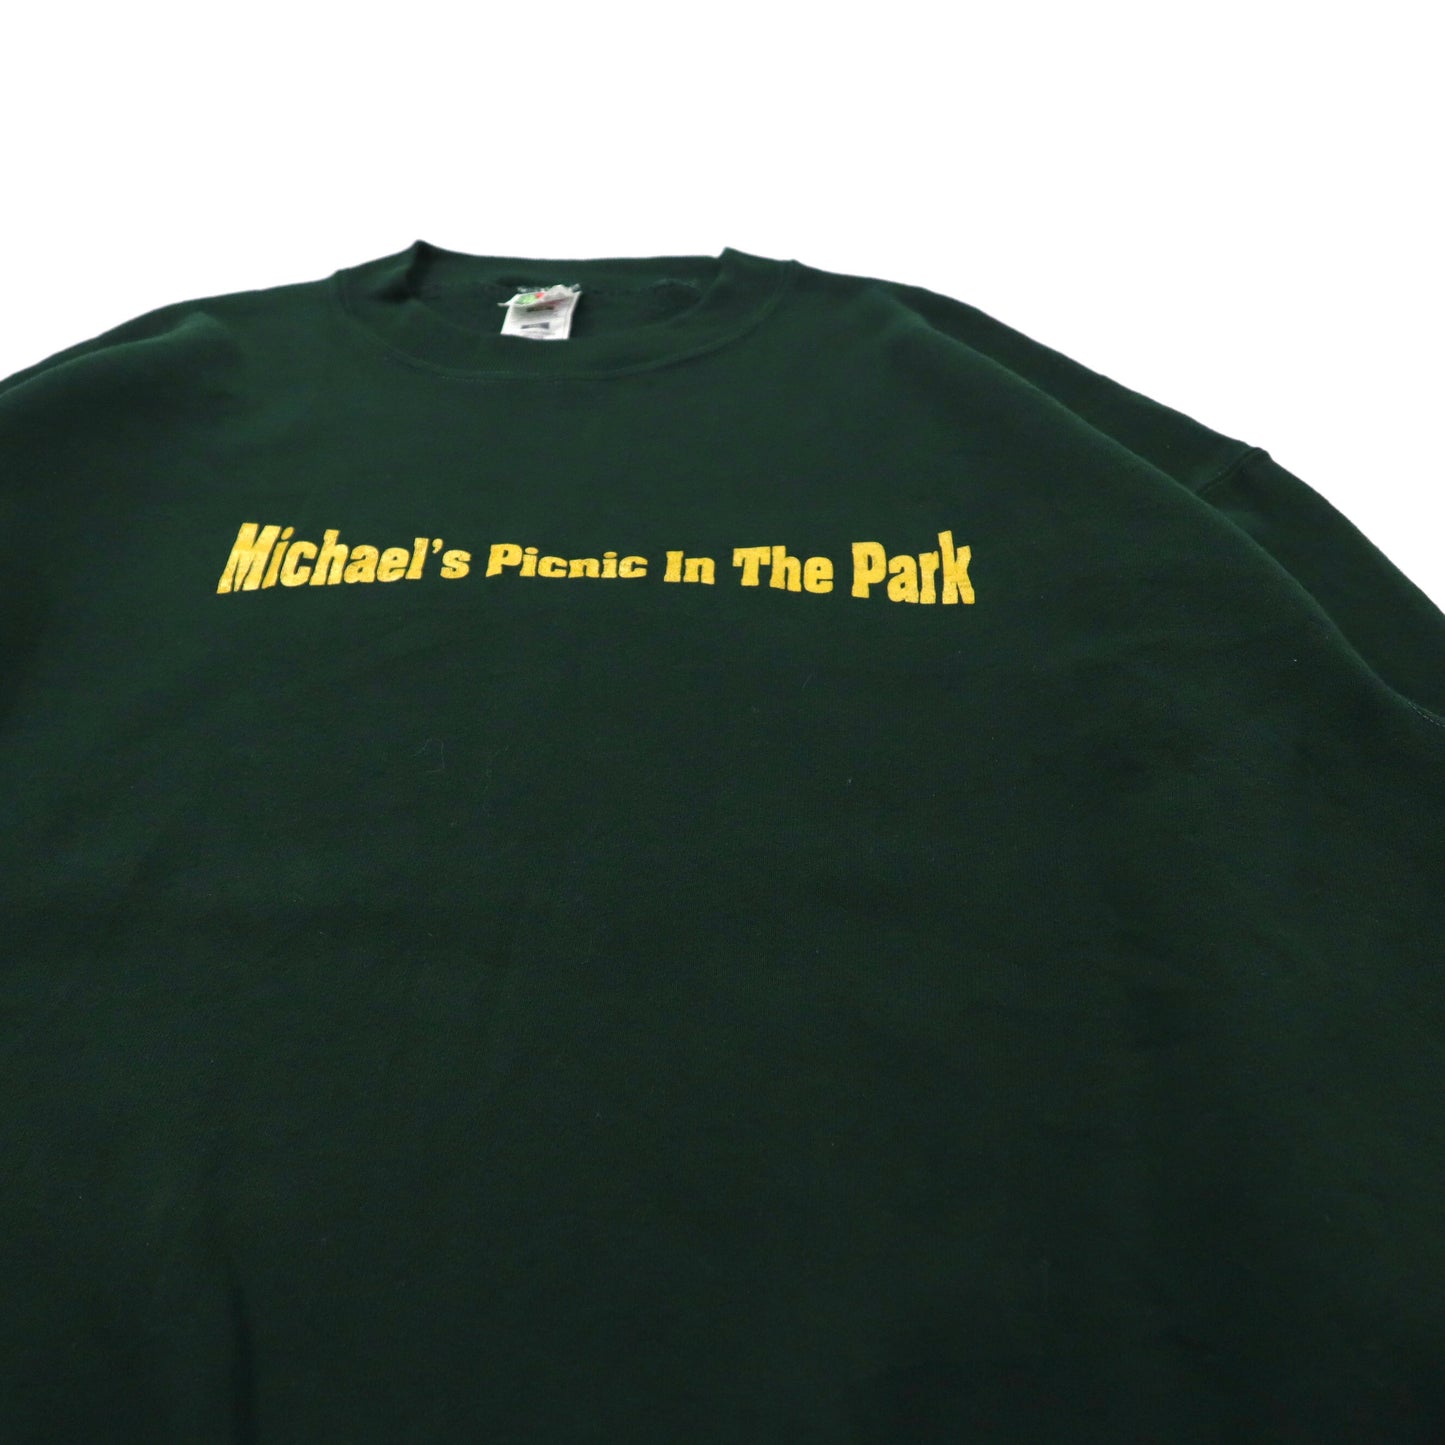 FRUIT OF THE LOOM ビッグサイズ プリントスウェット XXL グリーン コットン 裏起毛 Michael's Picnic In The Park 90年代 メキシコ製